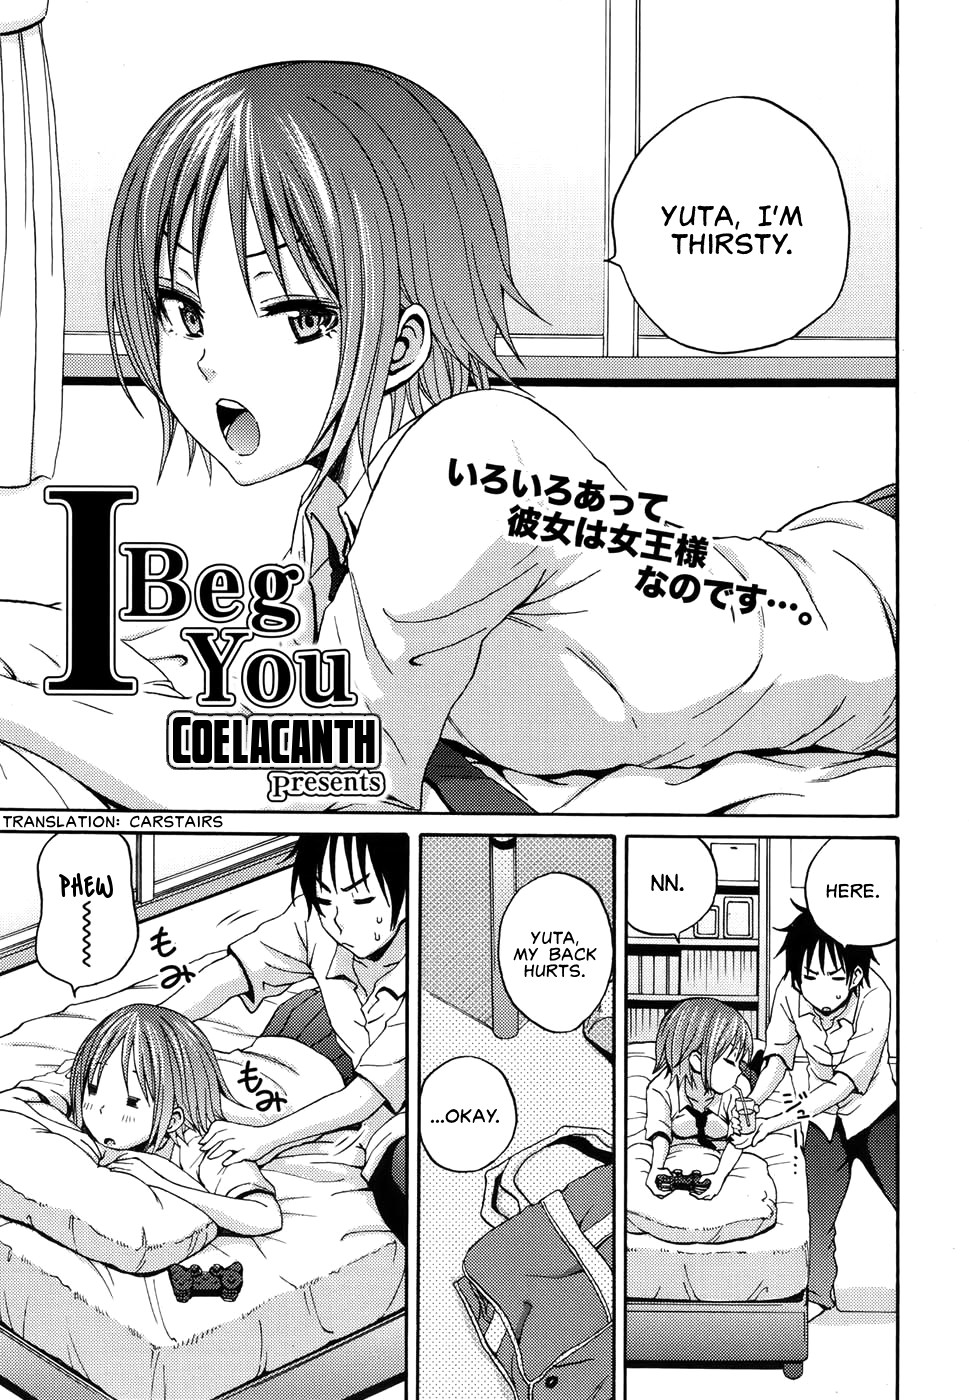 Manga sex deutsch